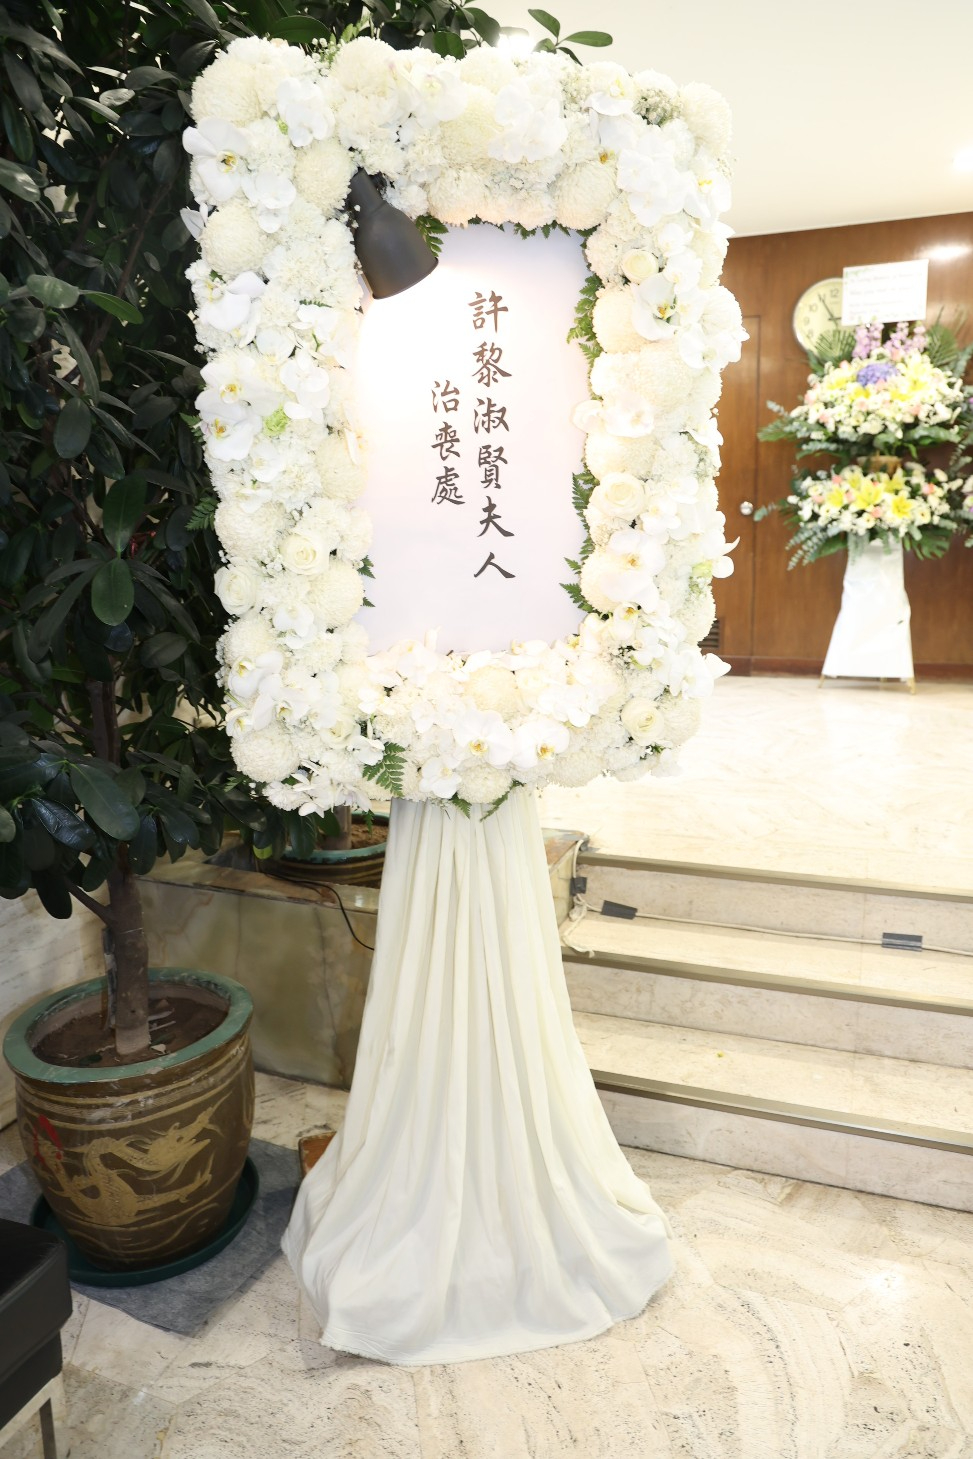 黎淑賢的家屬於1月18日為她在香港殯儀館設靈。